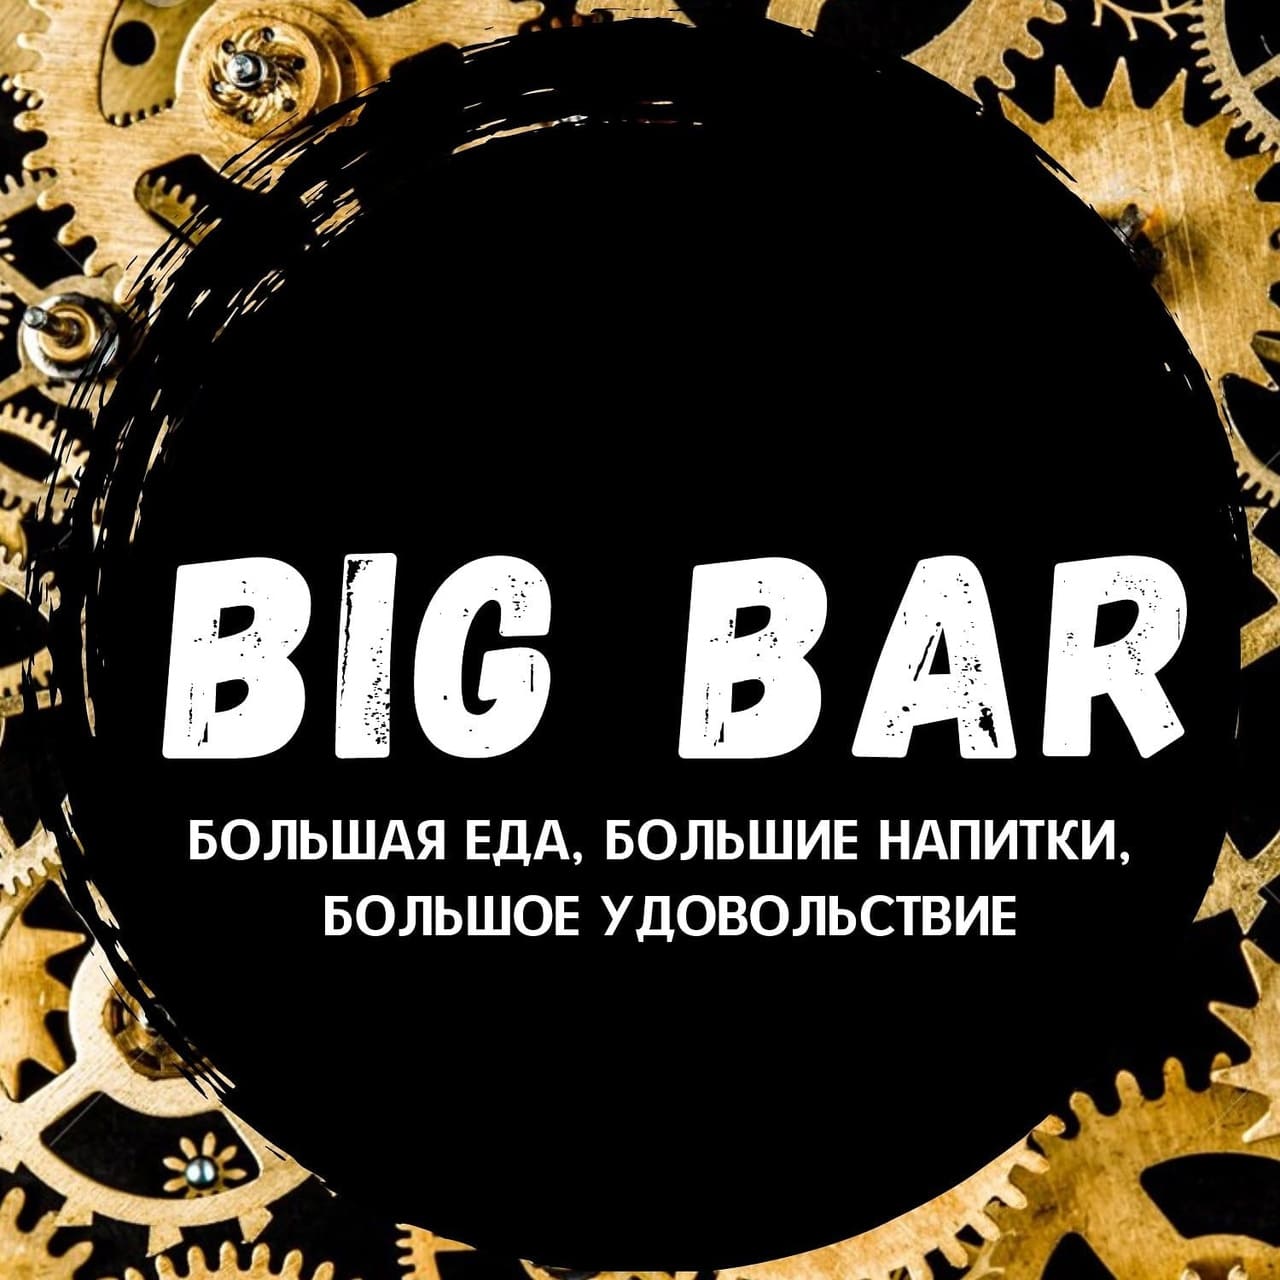 Bar "Big Bar"